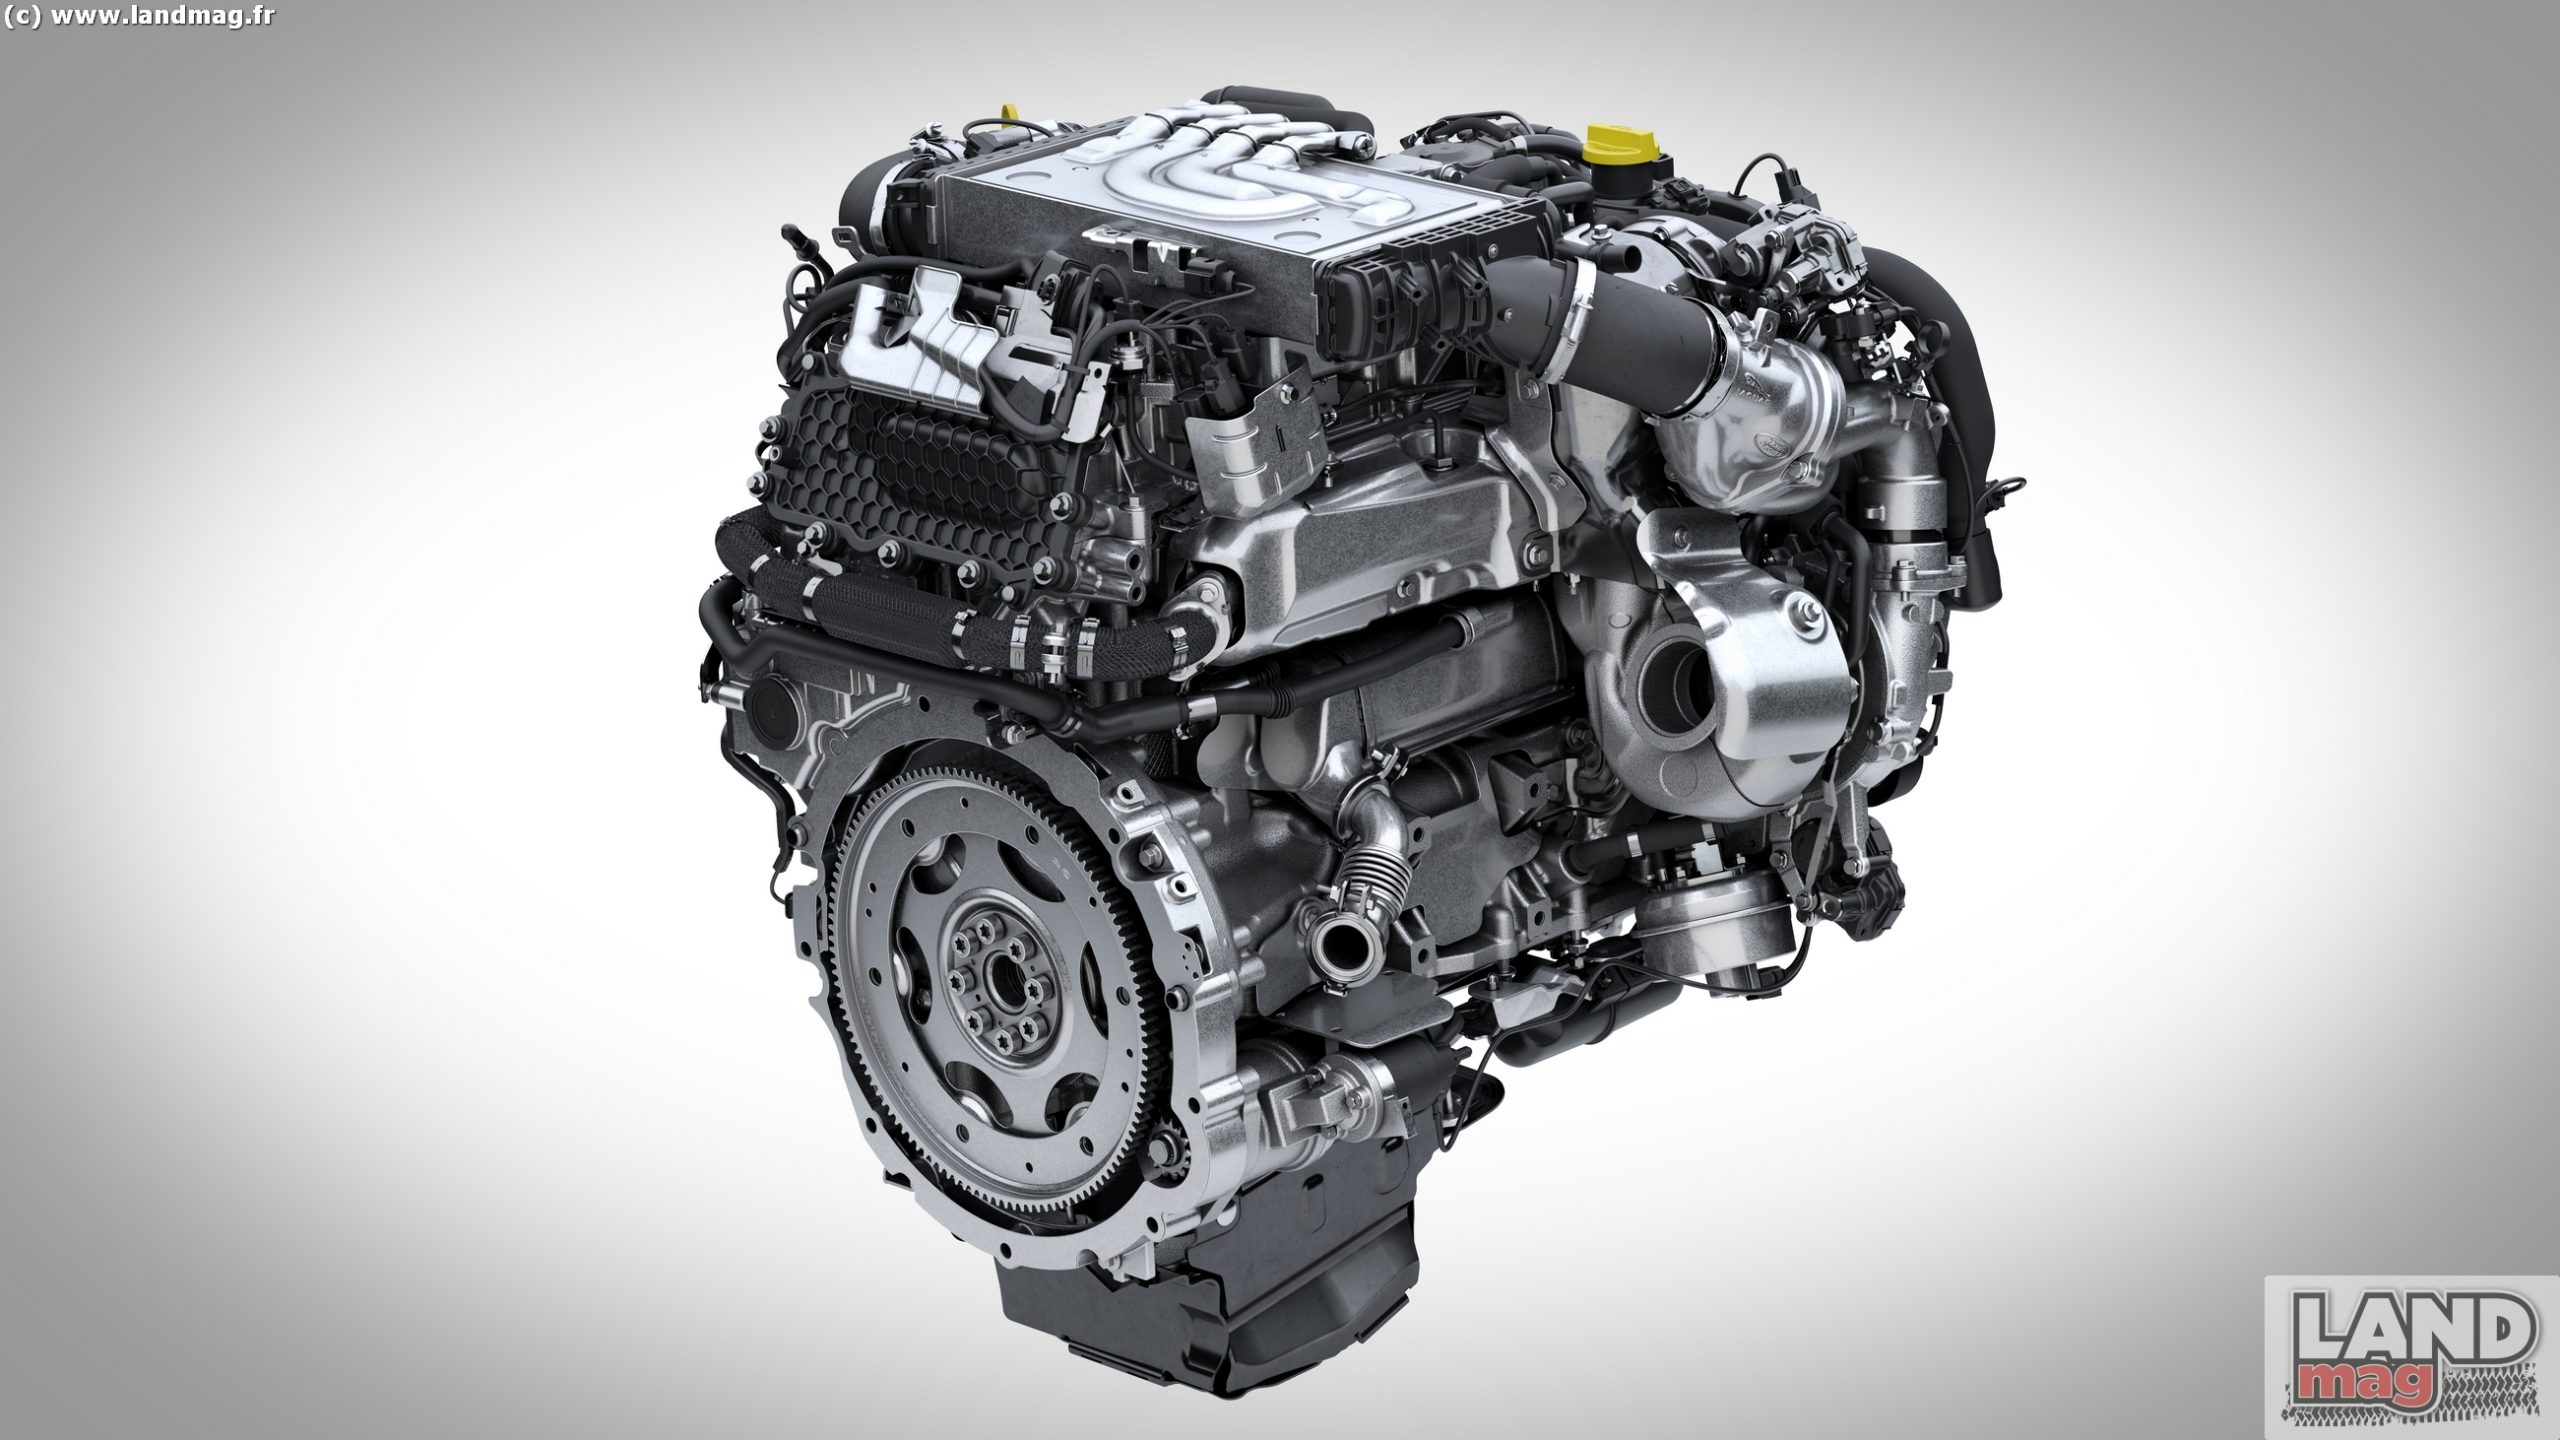 Ingenium 6 cylindres Diesel: il remplace les moteurs TDV6 et TDV8 chez Land Rover